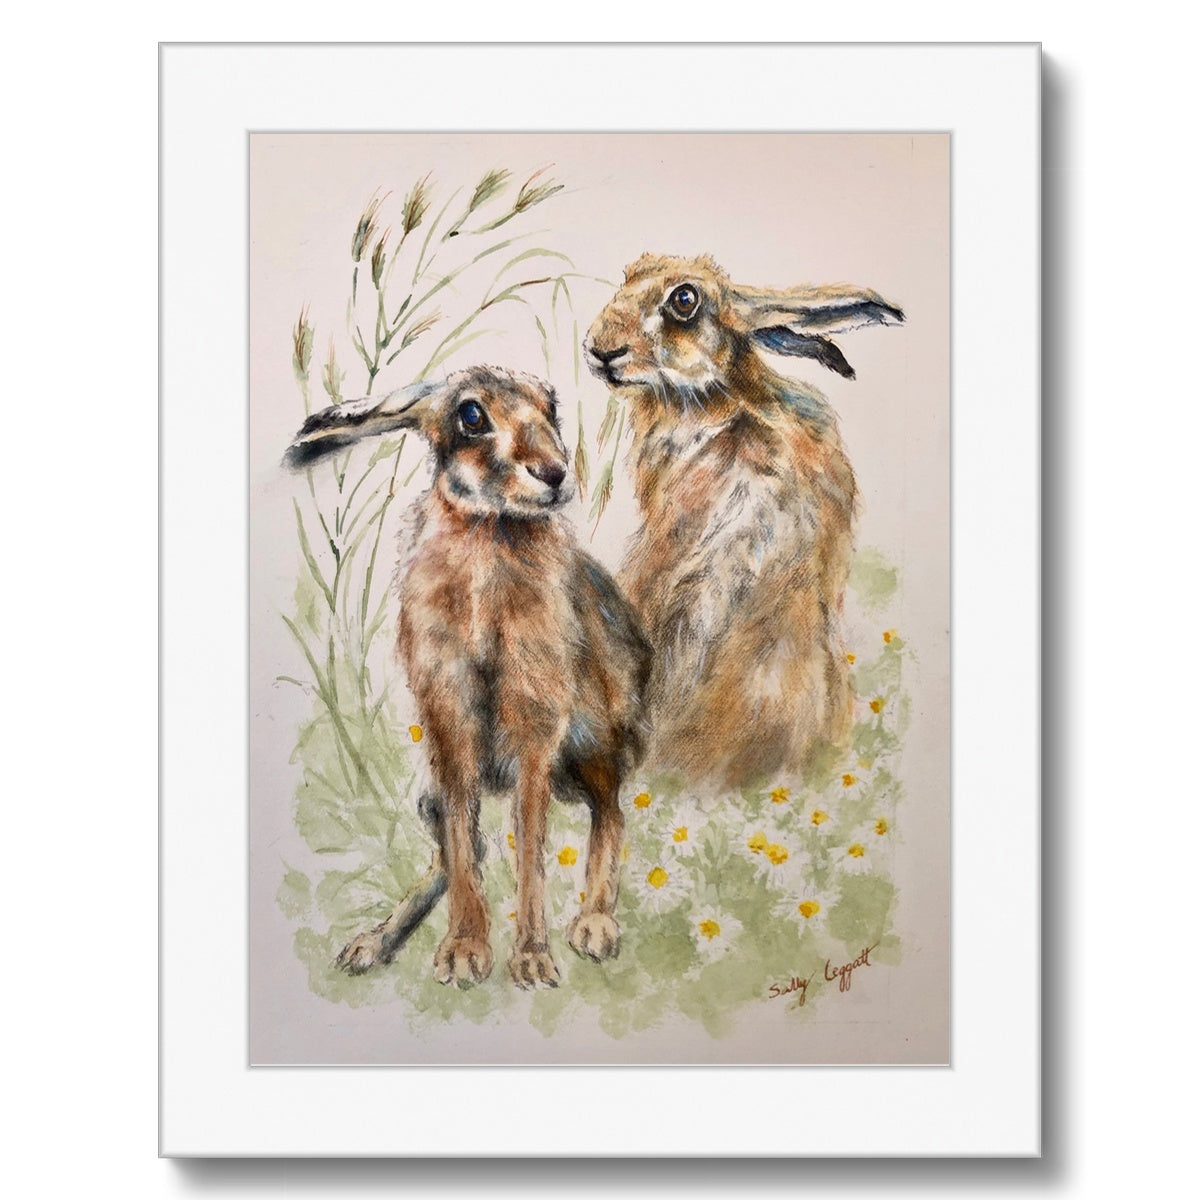 Two Hares by Sally Leggatt - Framed Print